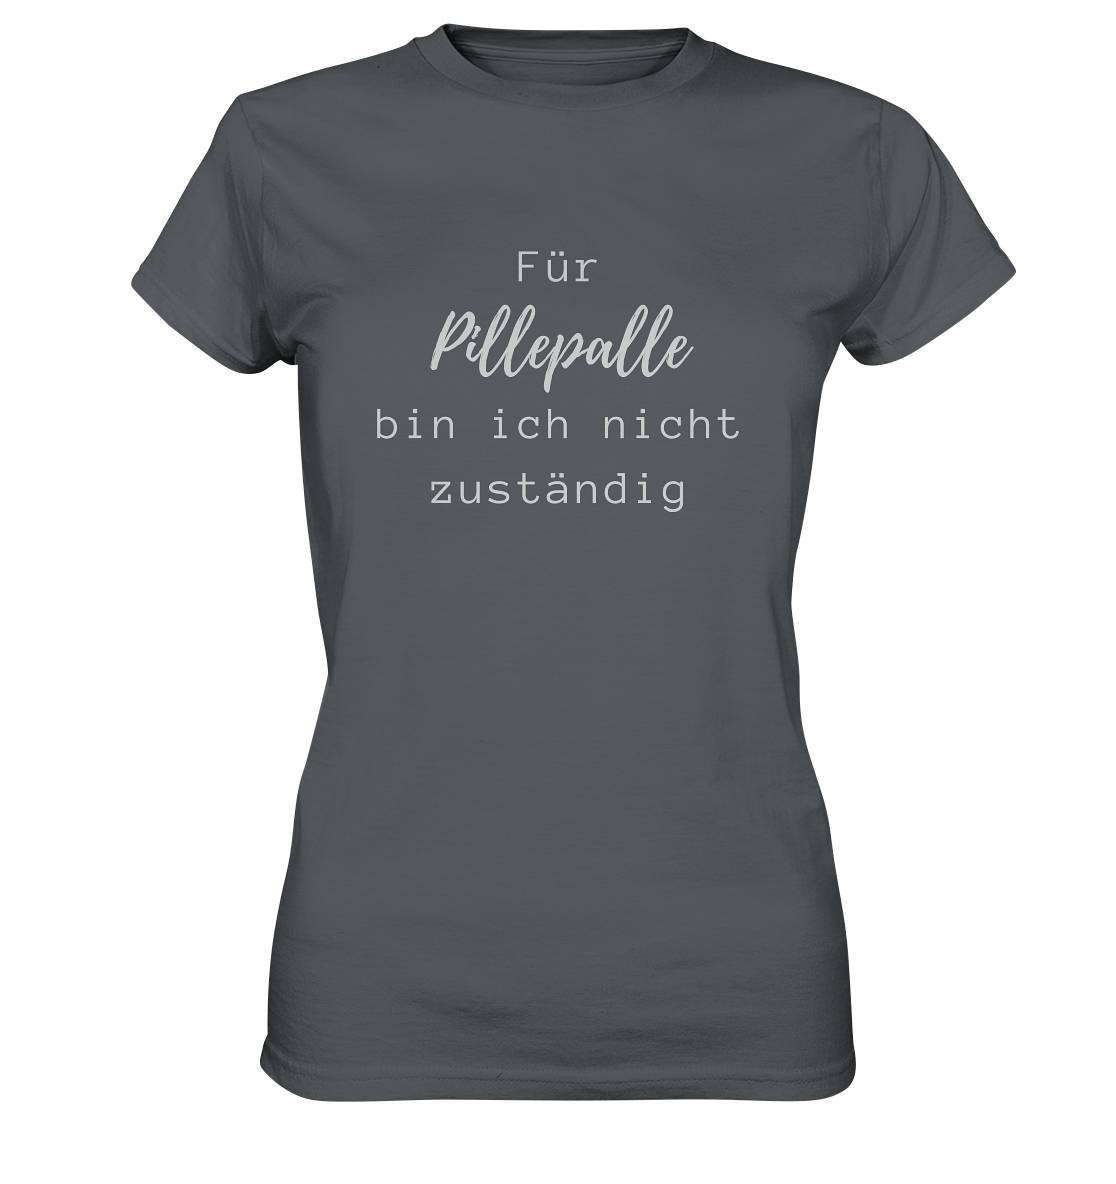 Damen-T-Shirt, Rundhals, mit weißem Aufdruck "Für Pillepalle bin ich nicht zuständig", grau